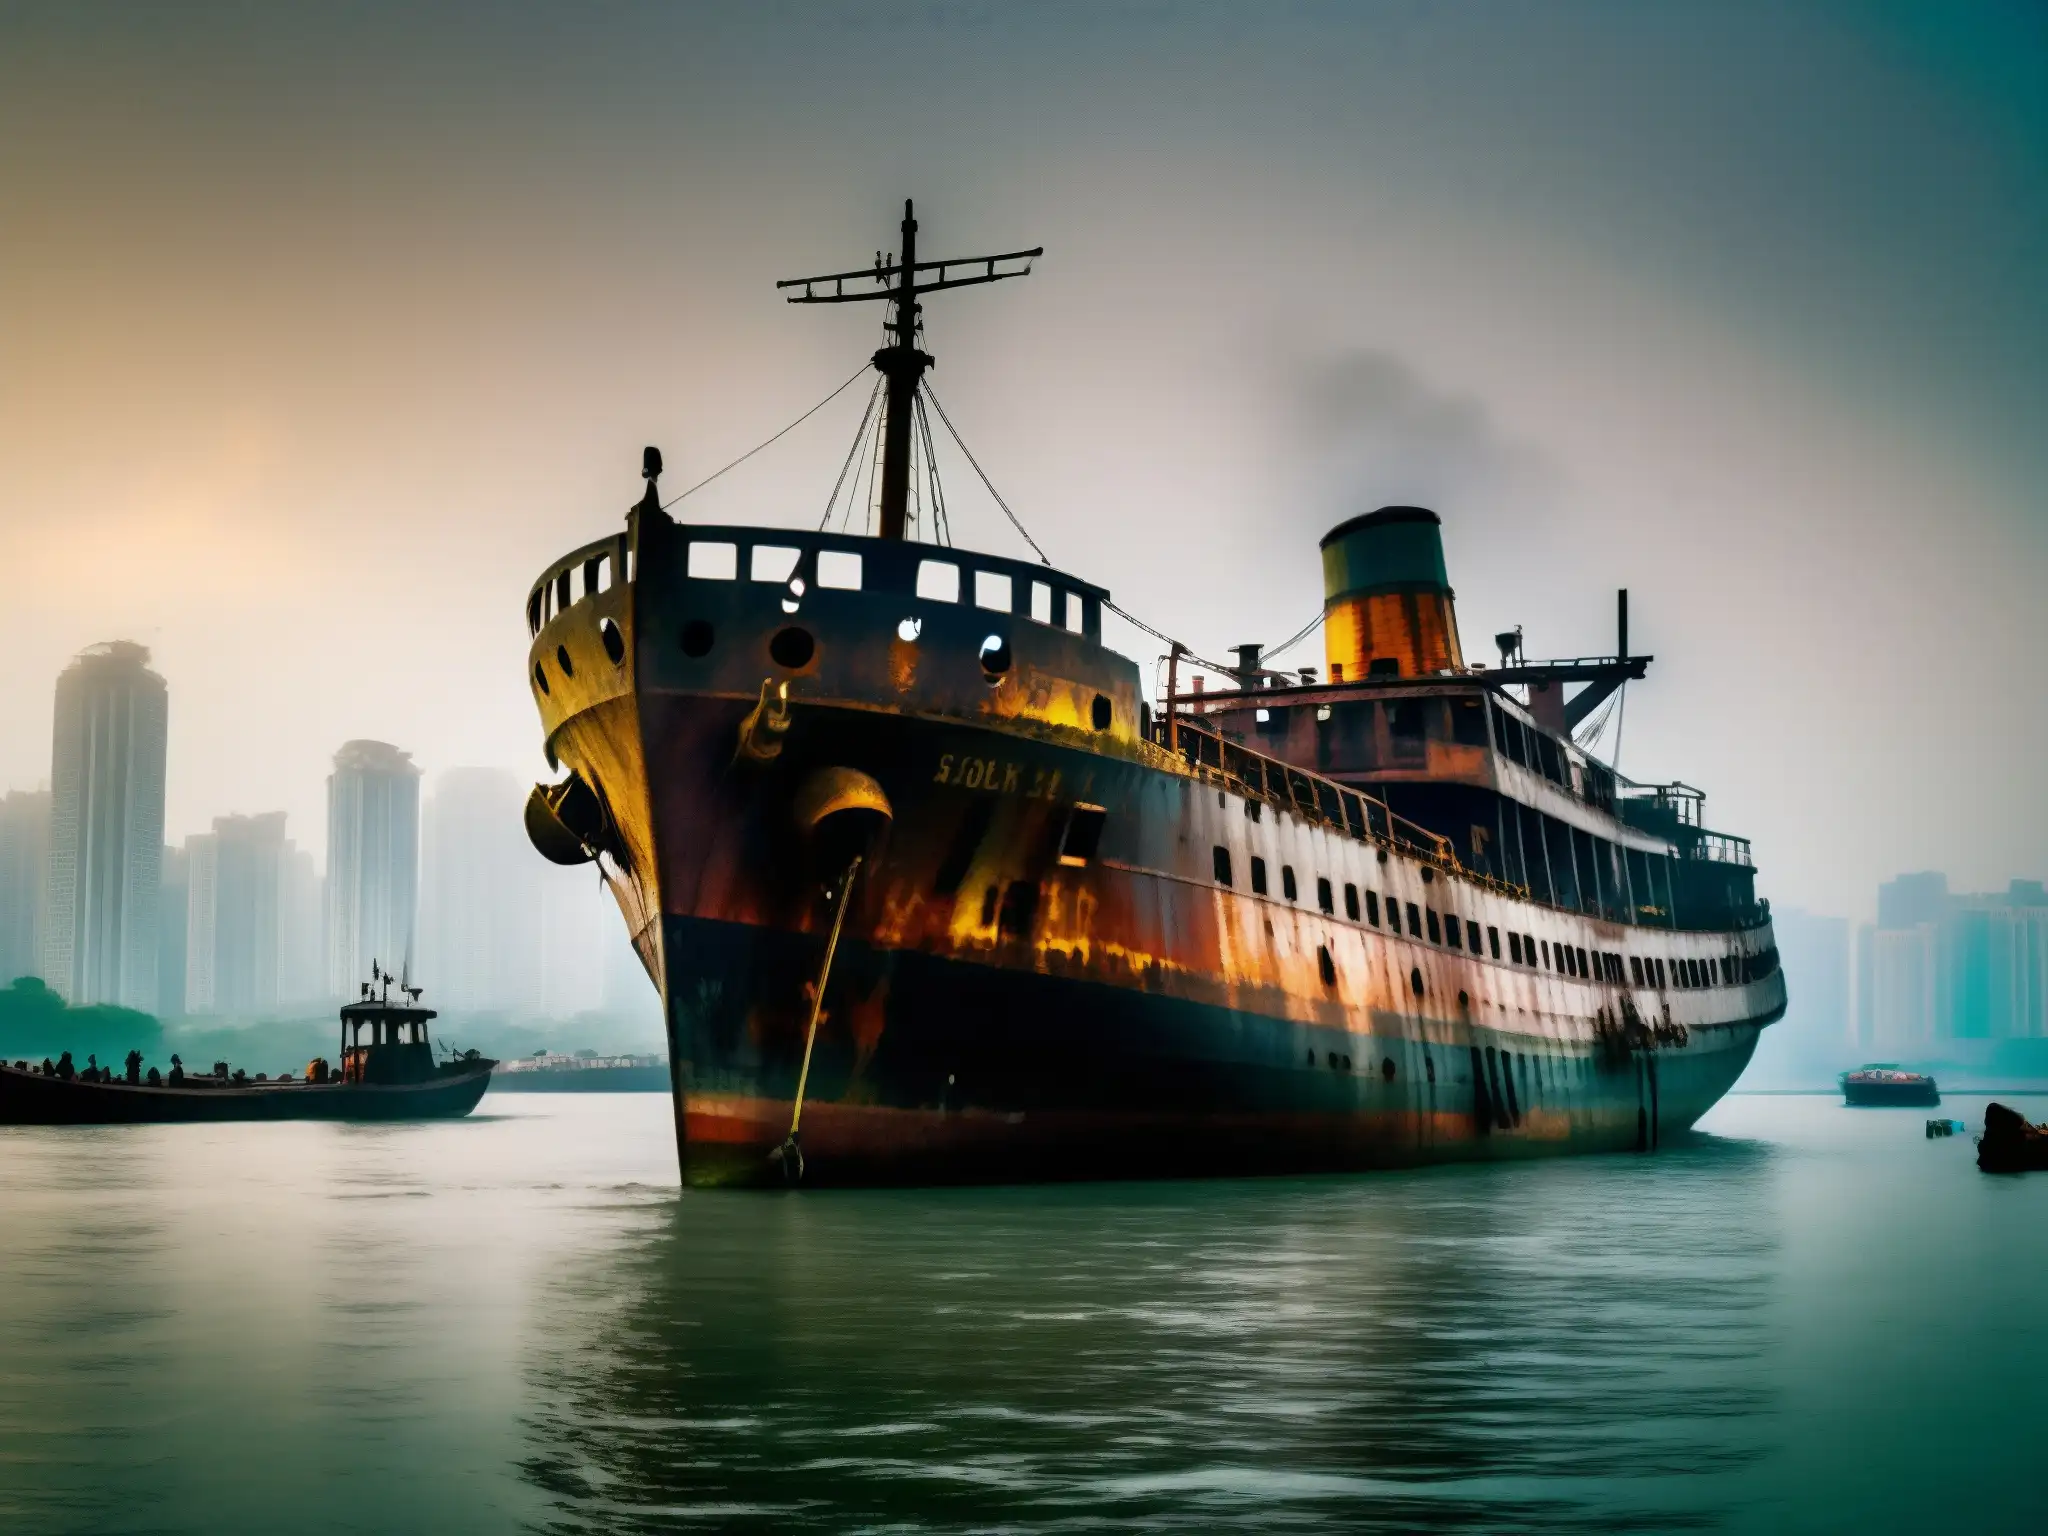 Imponente barco fantasma en el neblinoso puerto de Mumbai